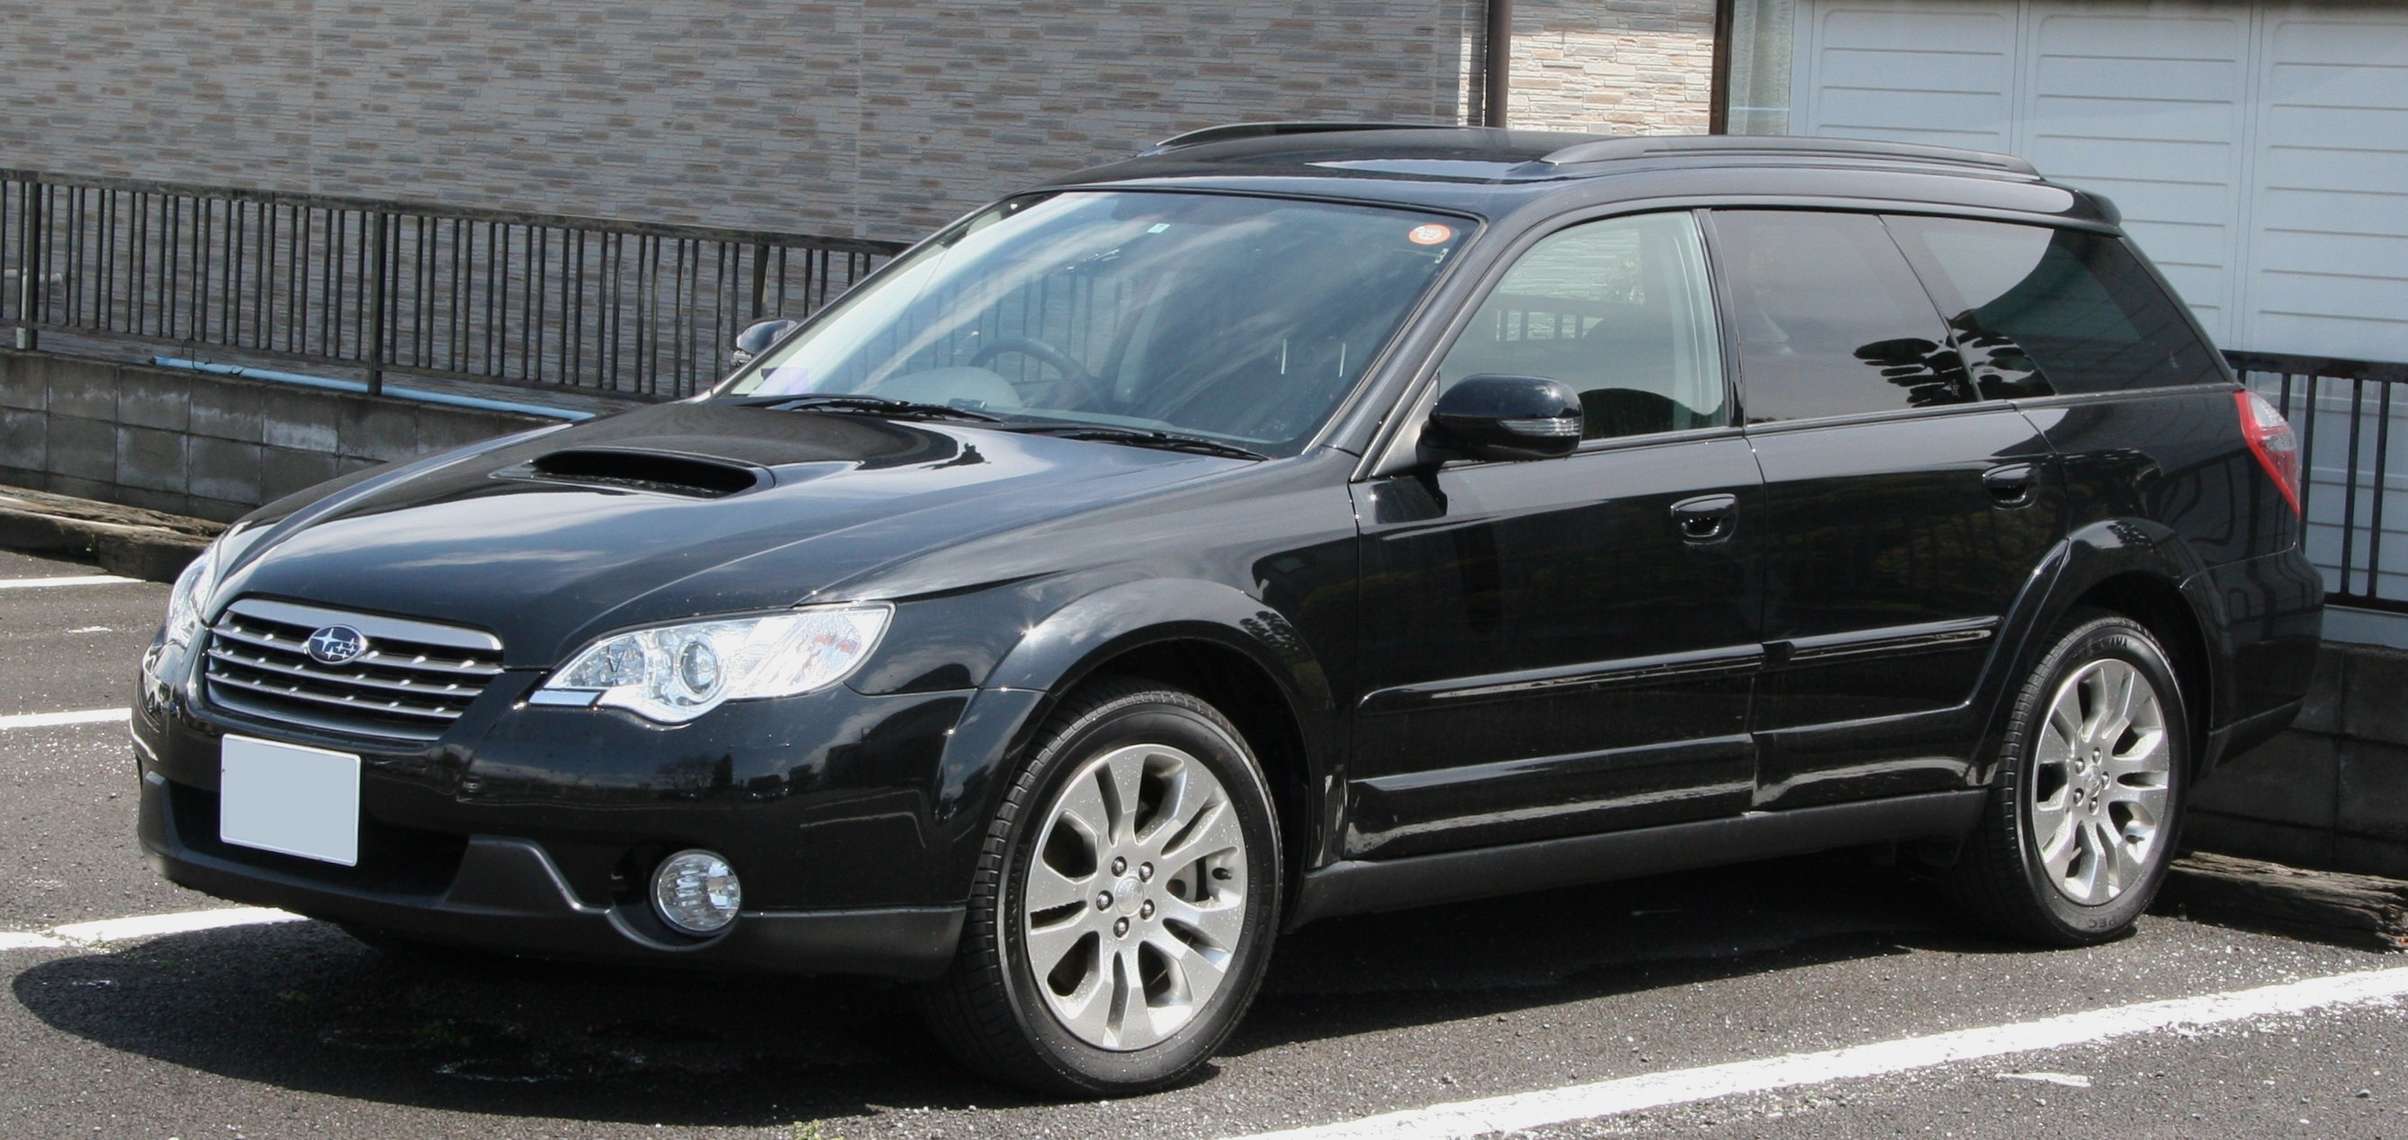 Subaru Legacy Outback #7172238